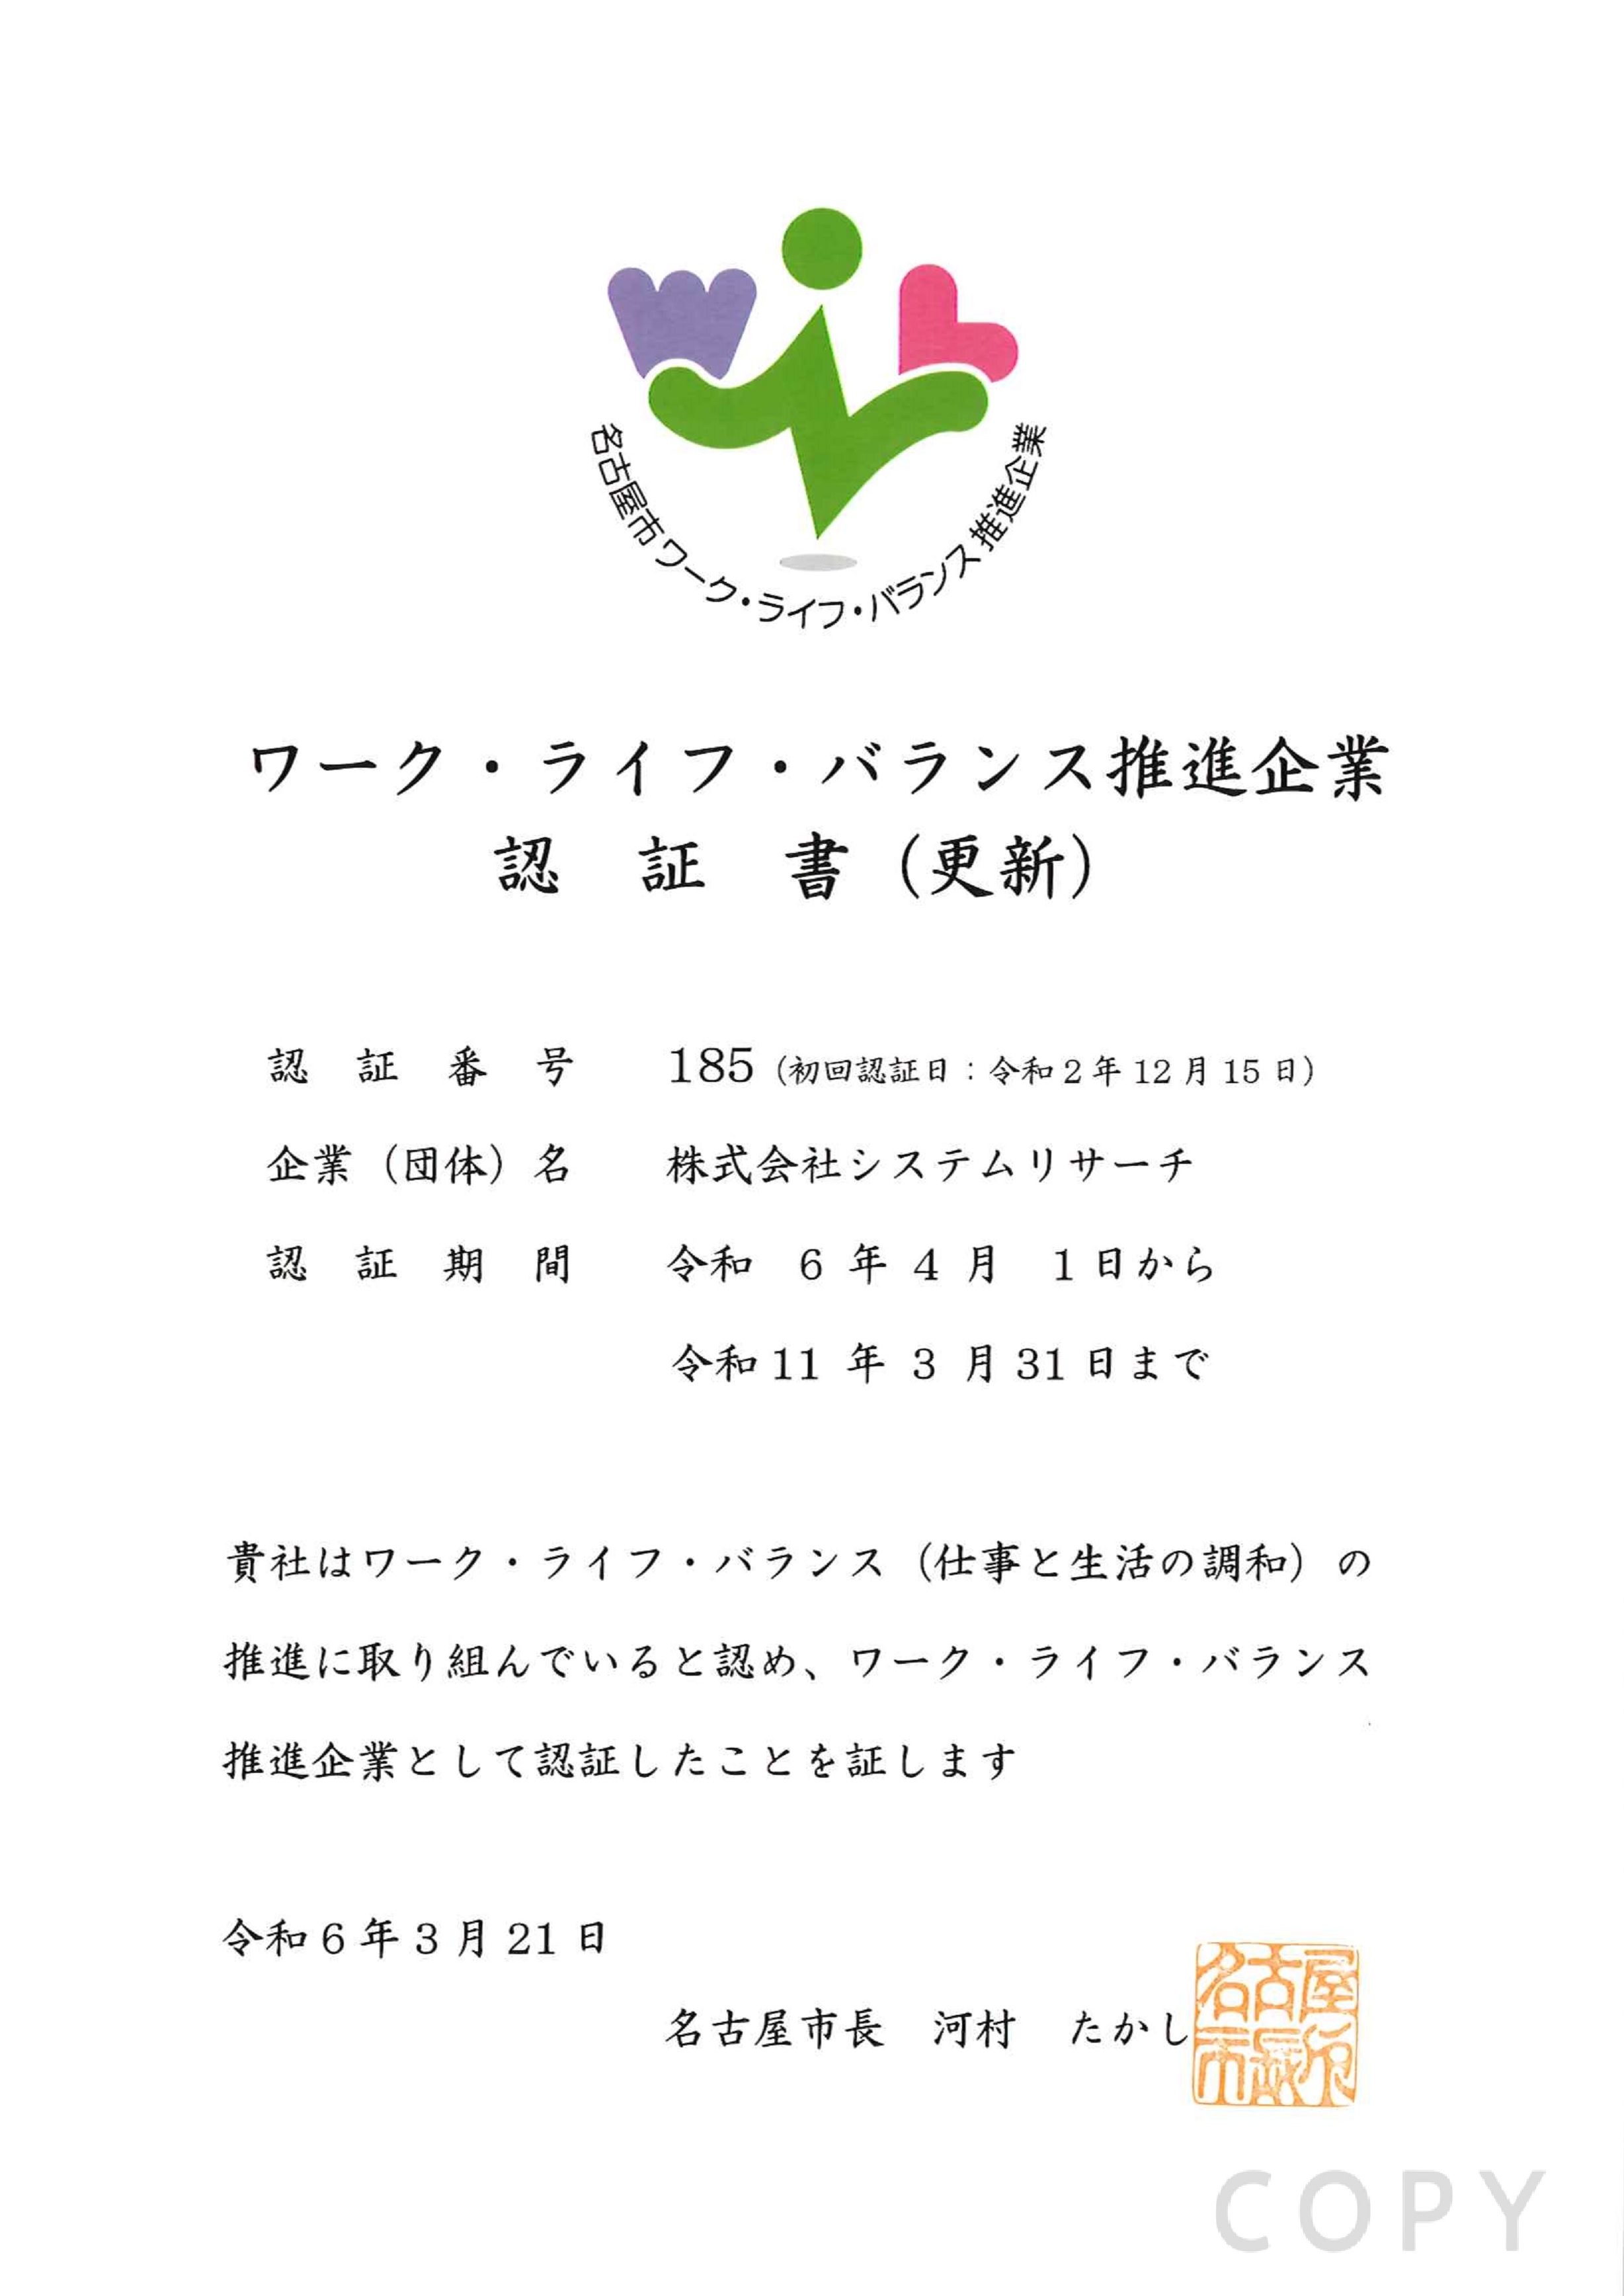 名古屋市ワーク・ライフ・バランス推進企業 認証書